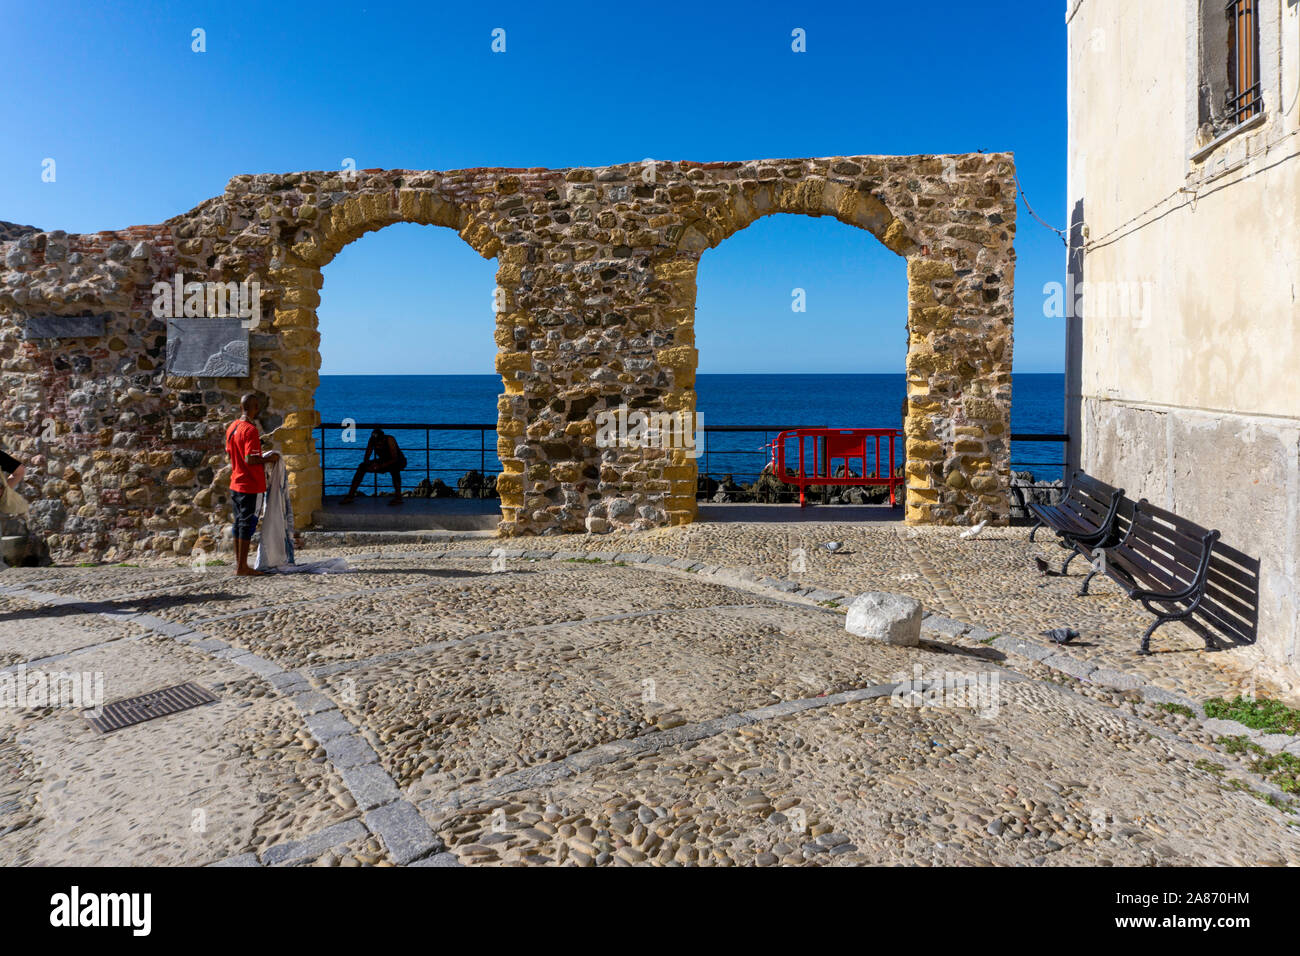 Près de la jetée de Cefalú, Sicile, Italie, un homme debout de vendre ses marchandises en face d'une double arcade menant à la mer. Banque D'Images